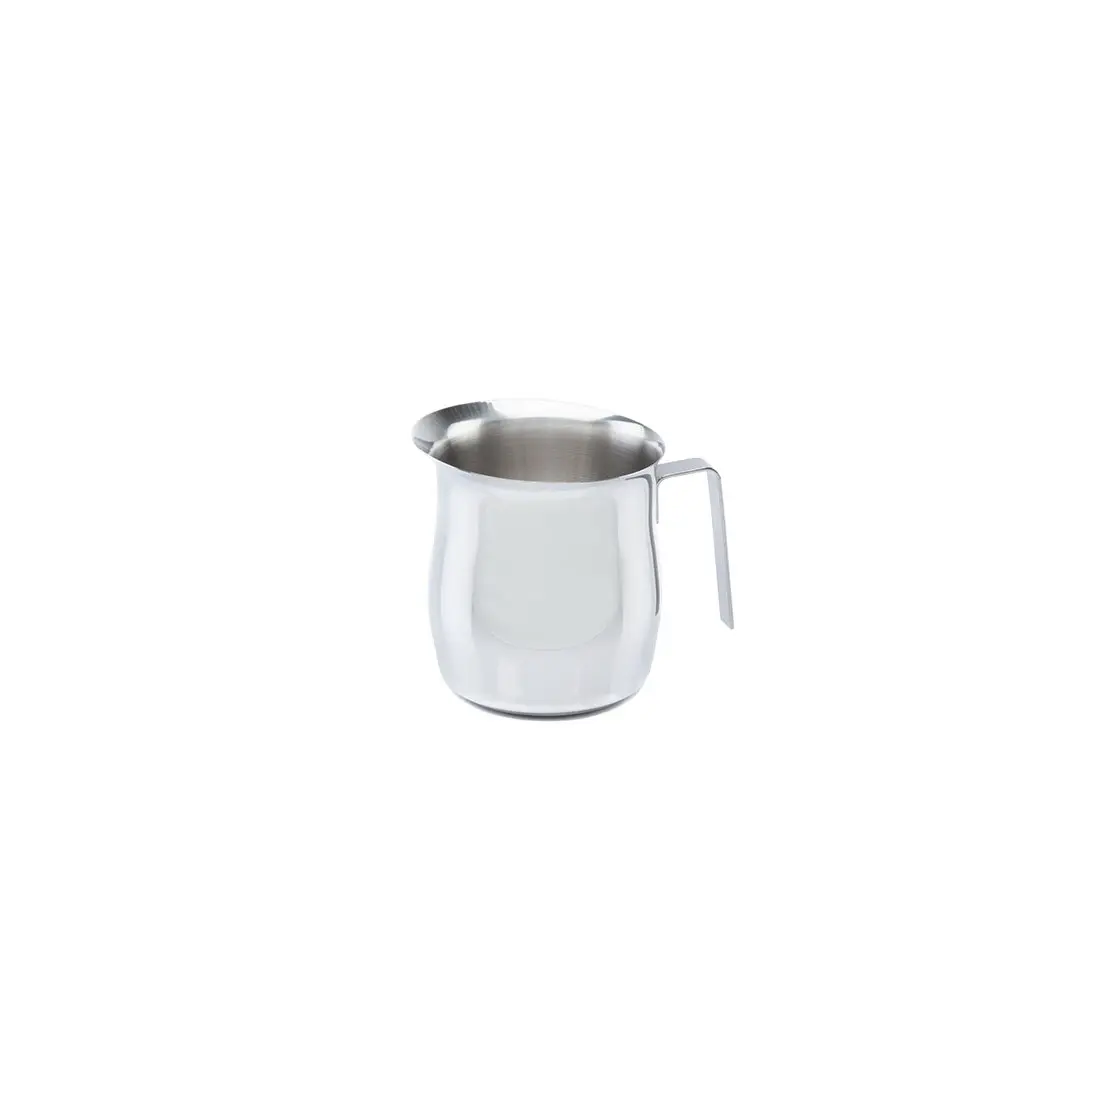 Pichet à lait à poignée ergonomique italienne 4 ensembles d'ustensiles de cuisine poignée en acier inoxydable AISI 304 18/10 lait eau thé origine durable